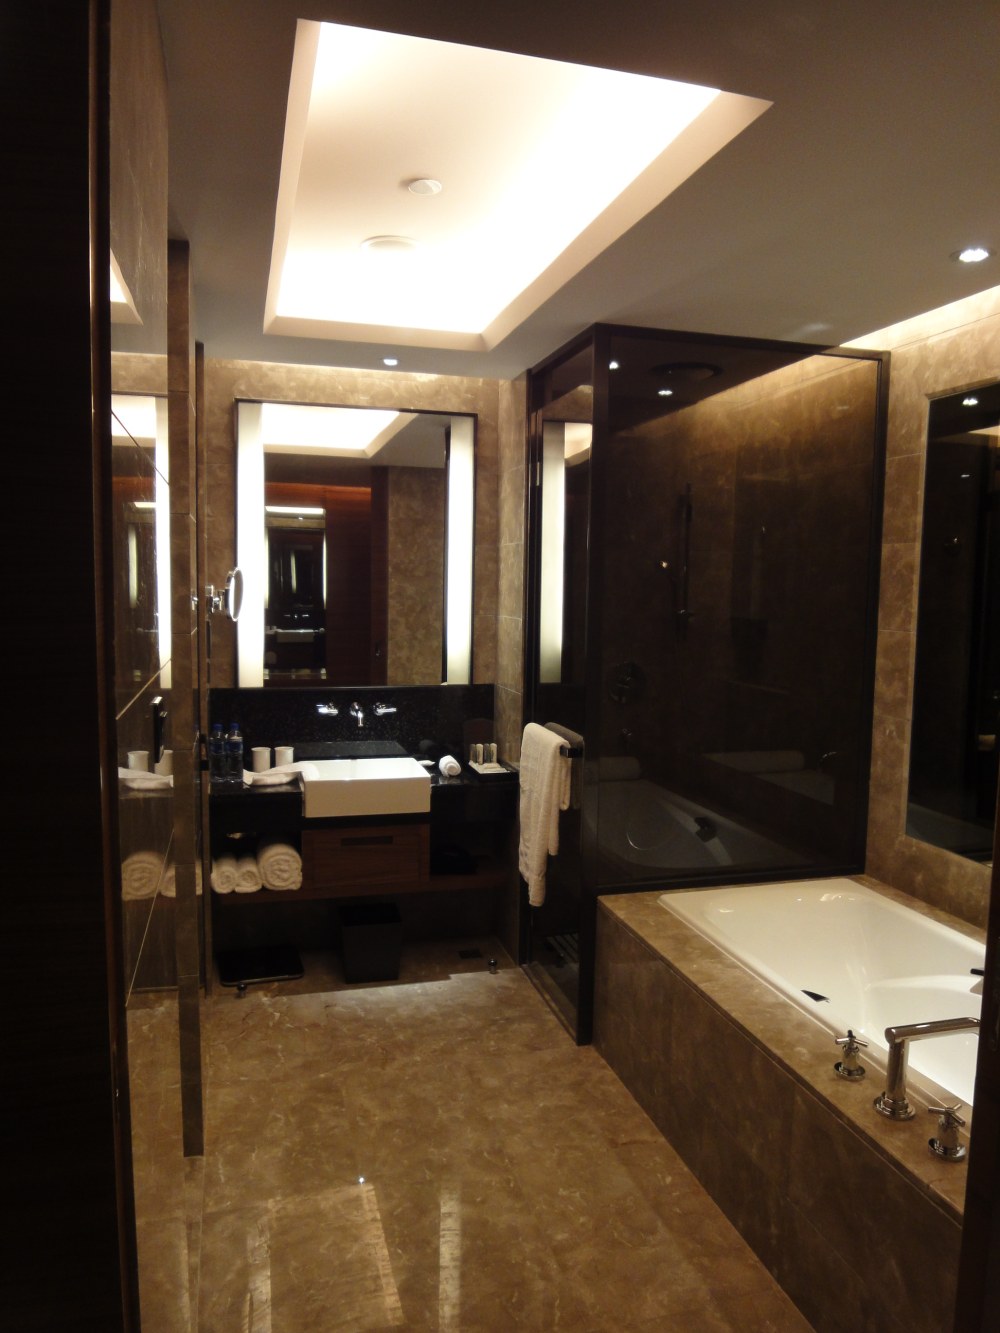 惠州皇冠假日酒店(Crowne Plaza HuiZhou Hotel )高清客房细部拍摄_DSC08511.JPG